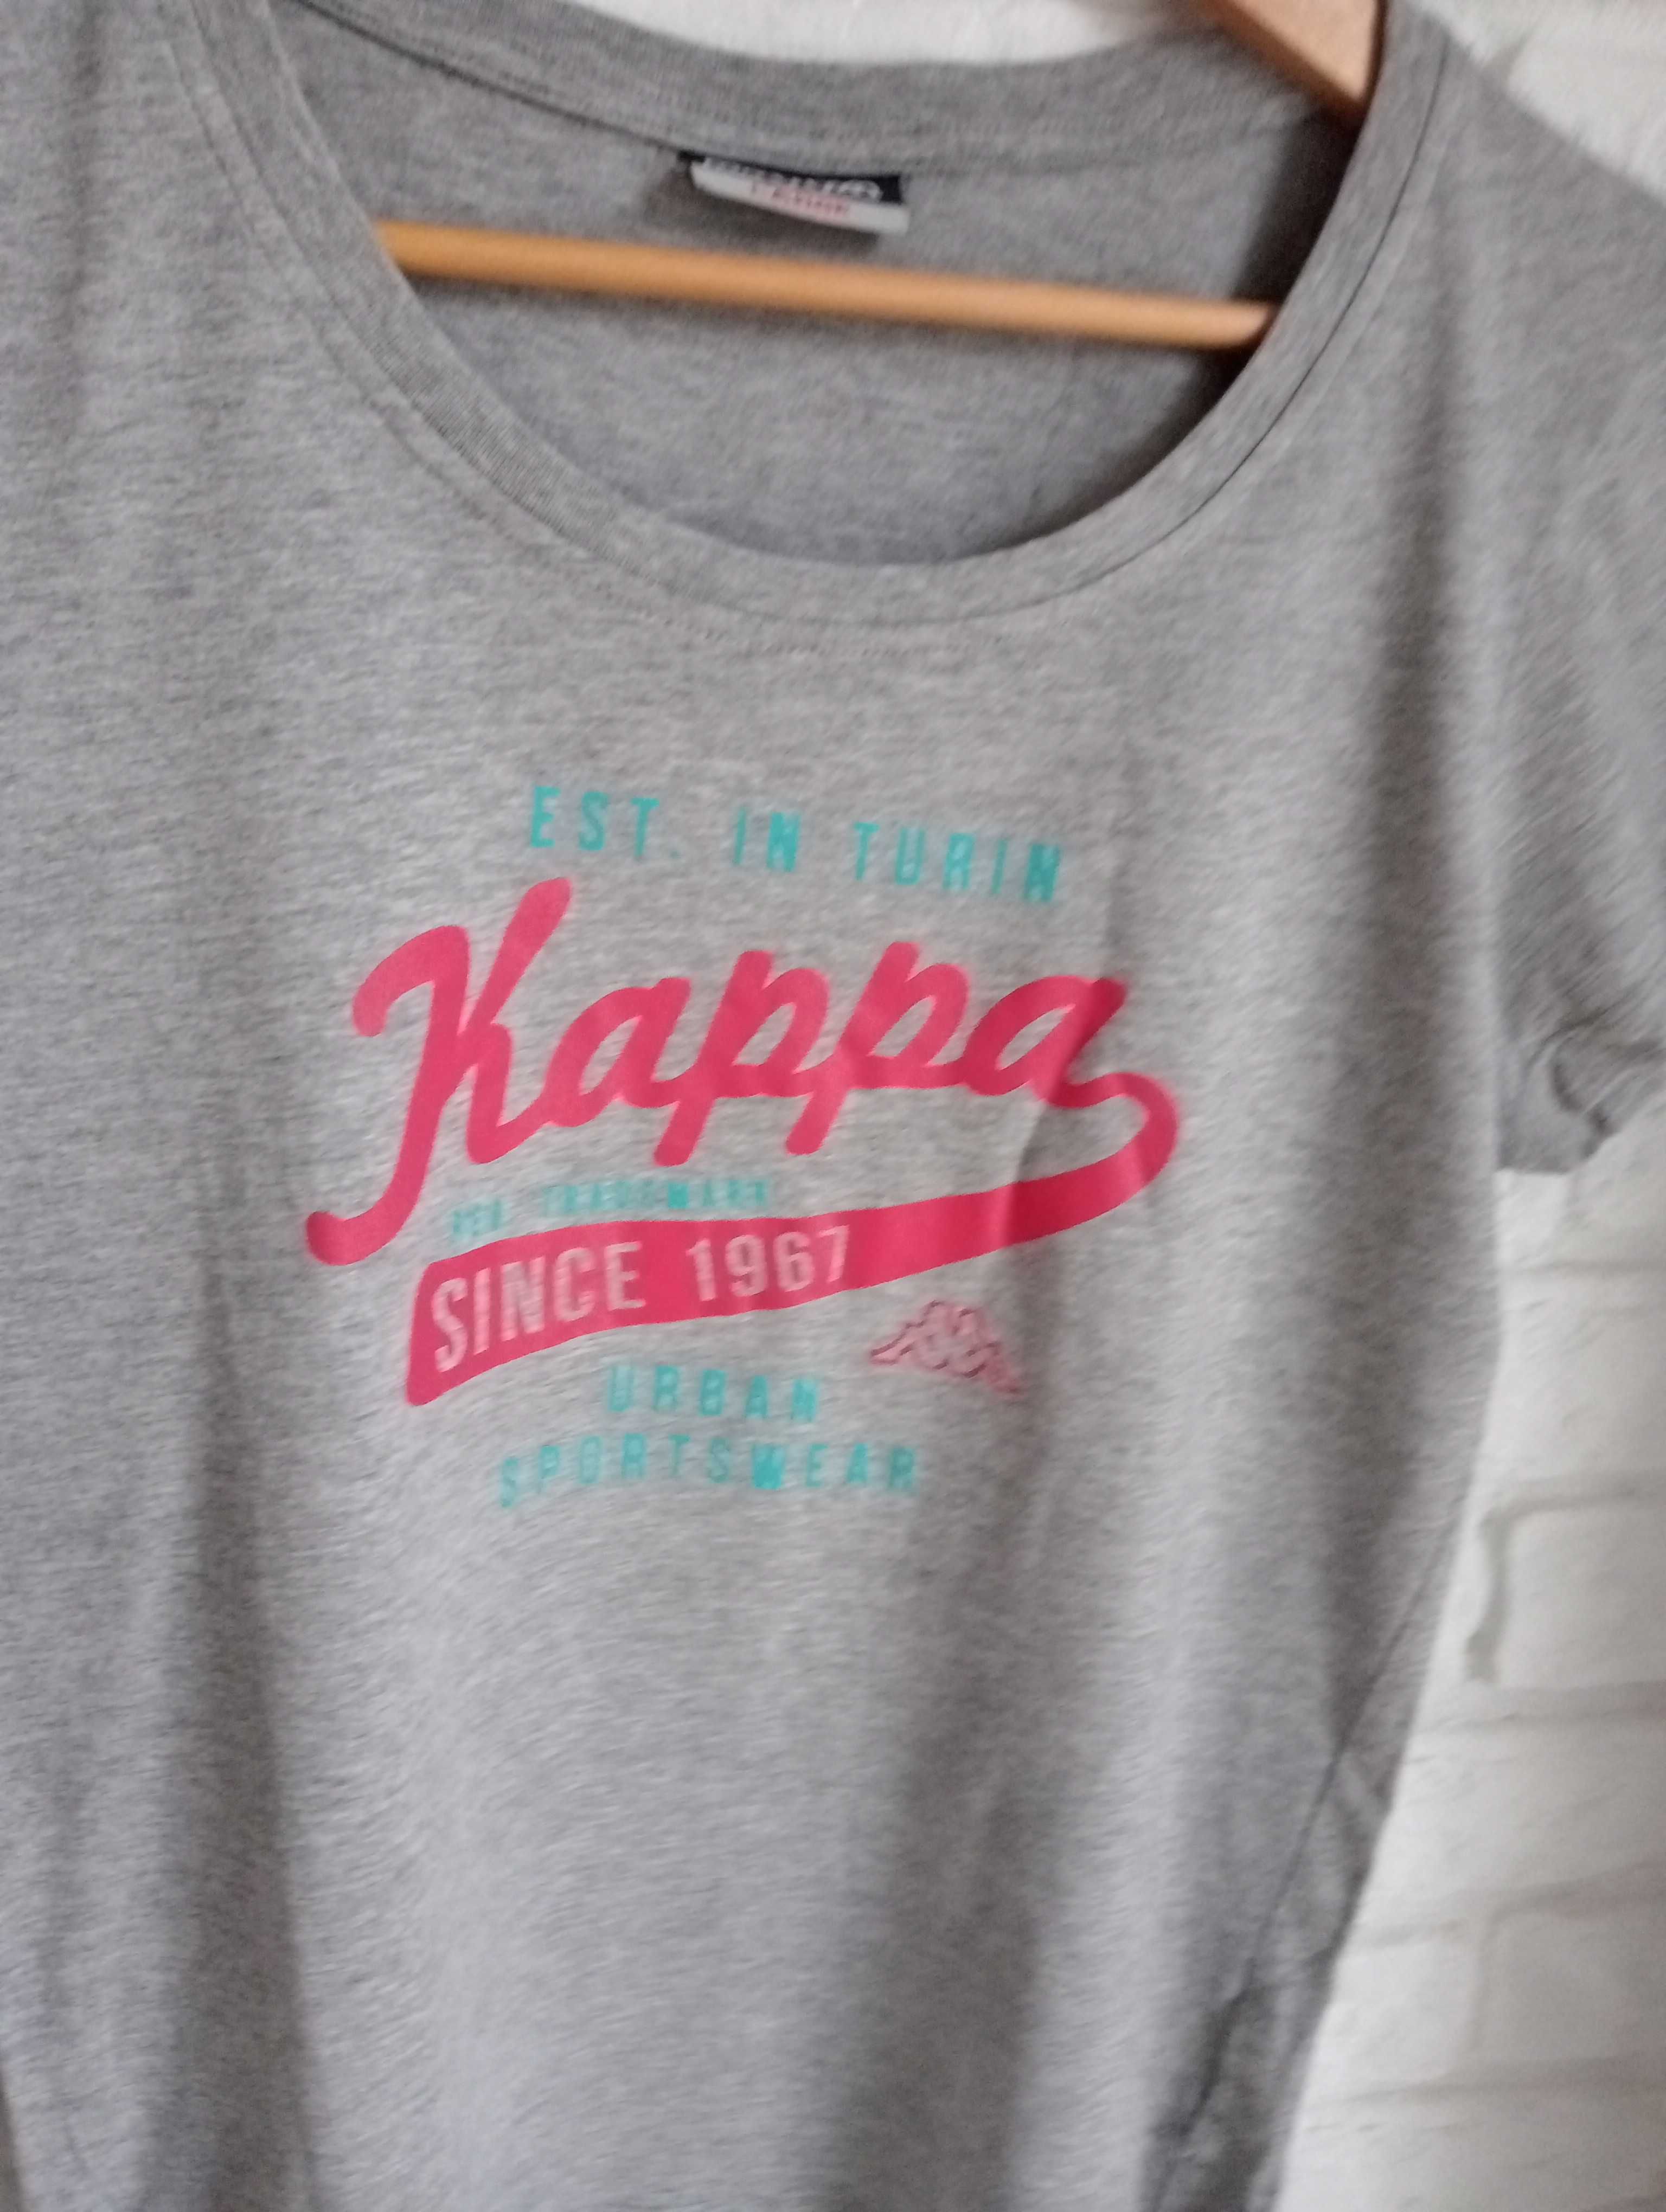 Kappa T-shirt damski szary, krótki rękaw L/40/12 Kappa